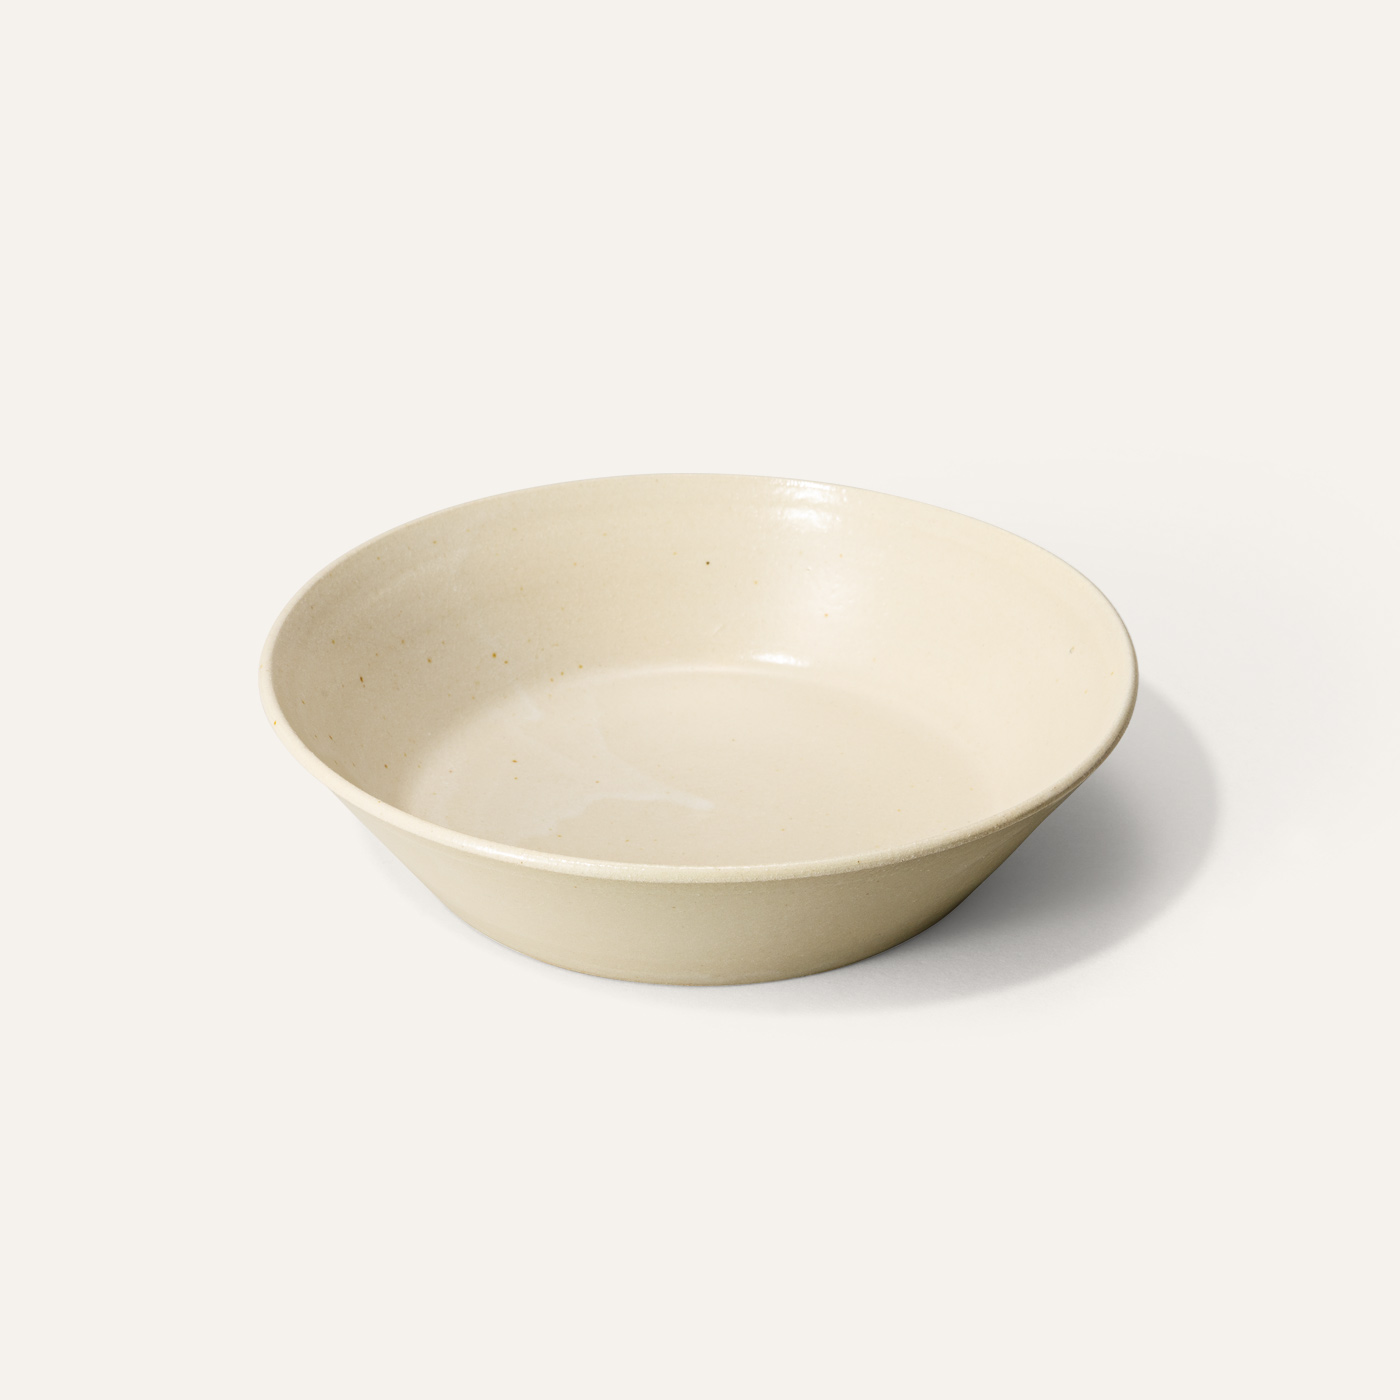 shallow bowl white